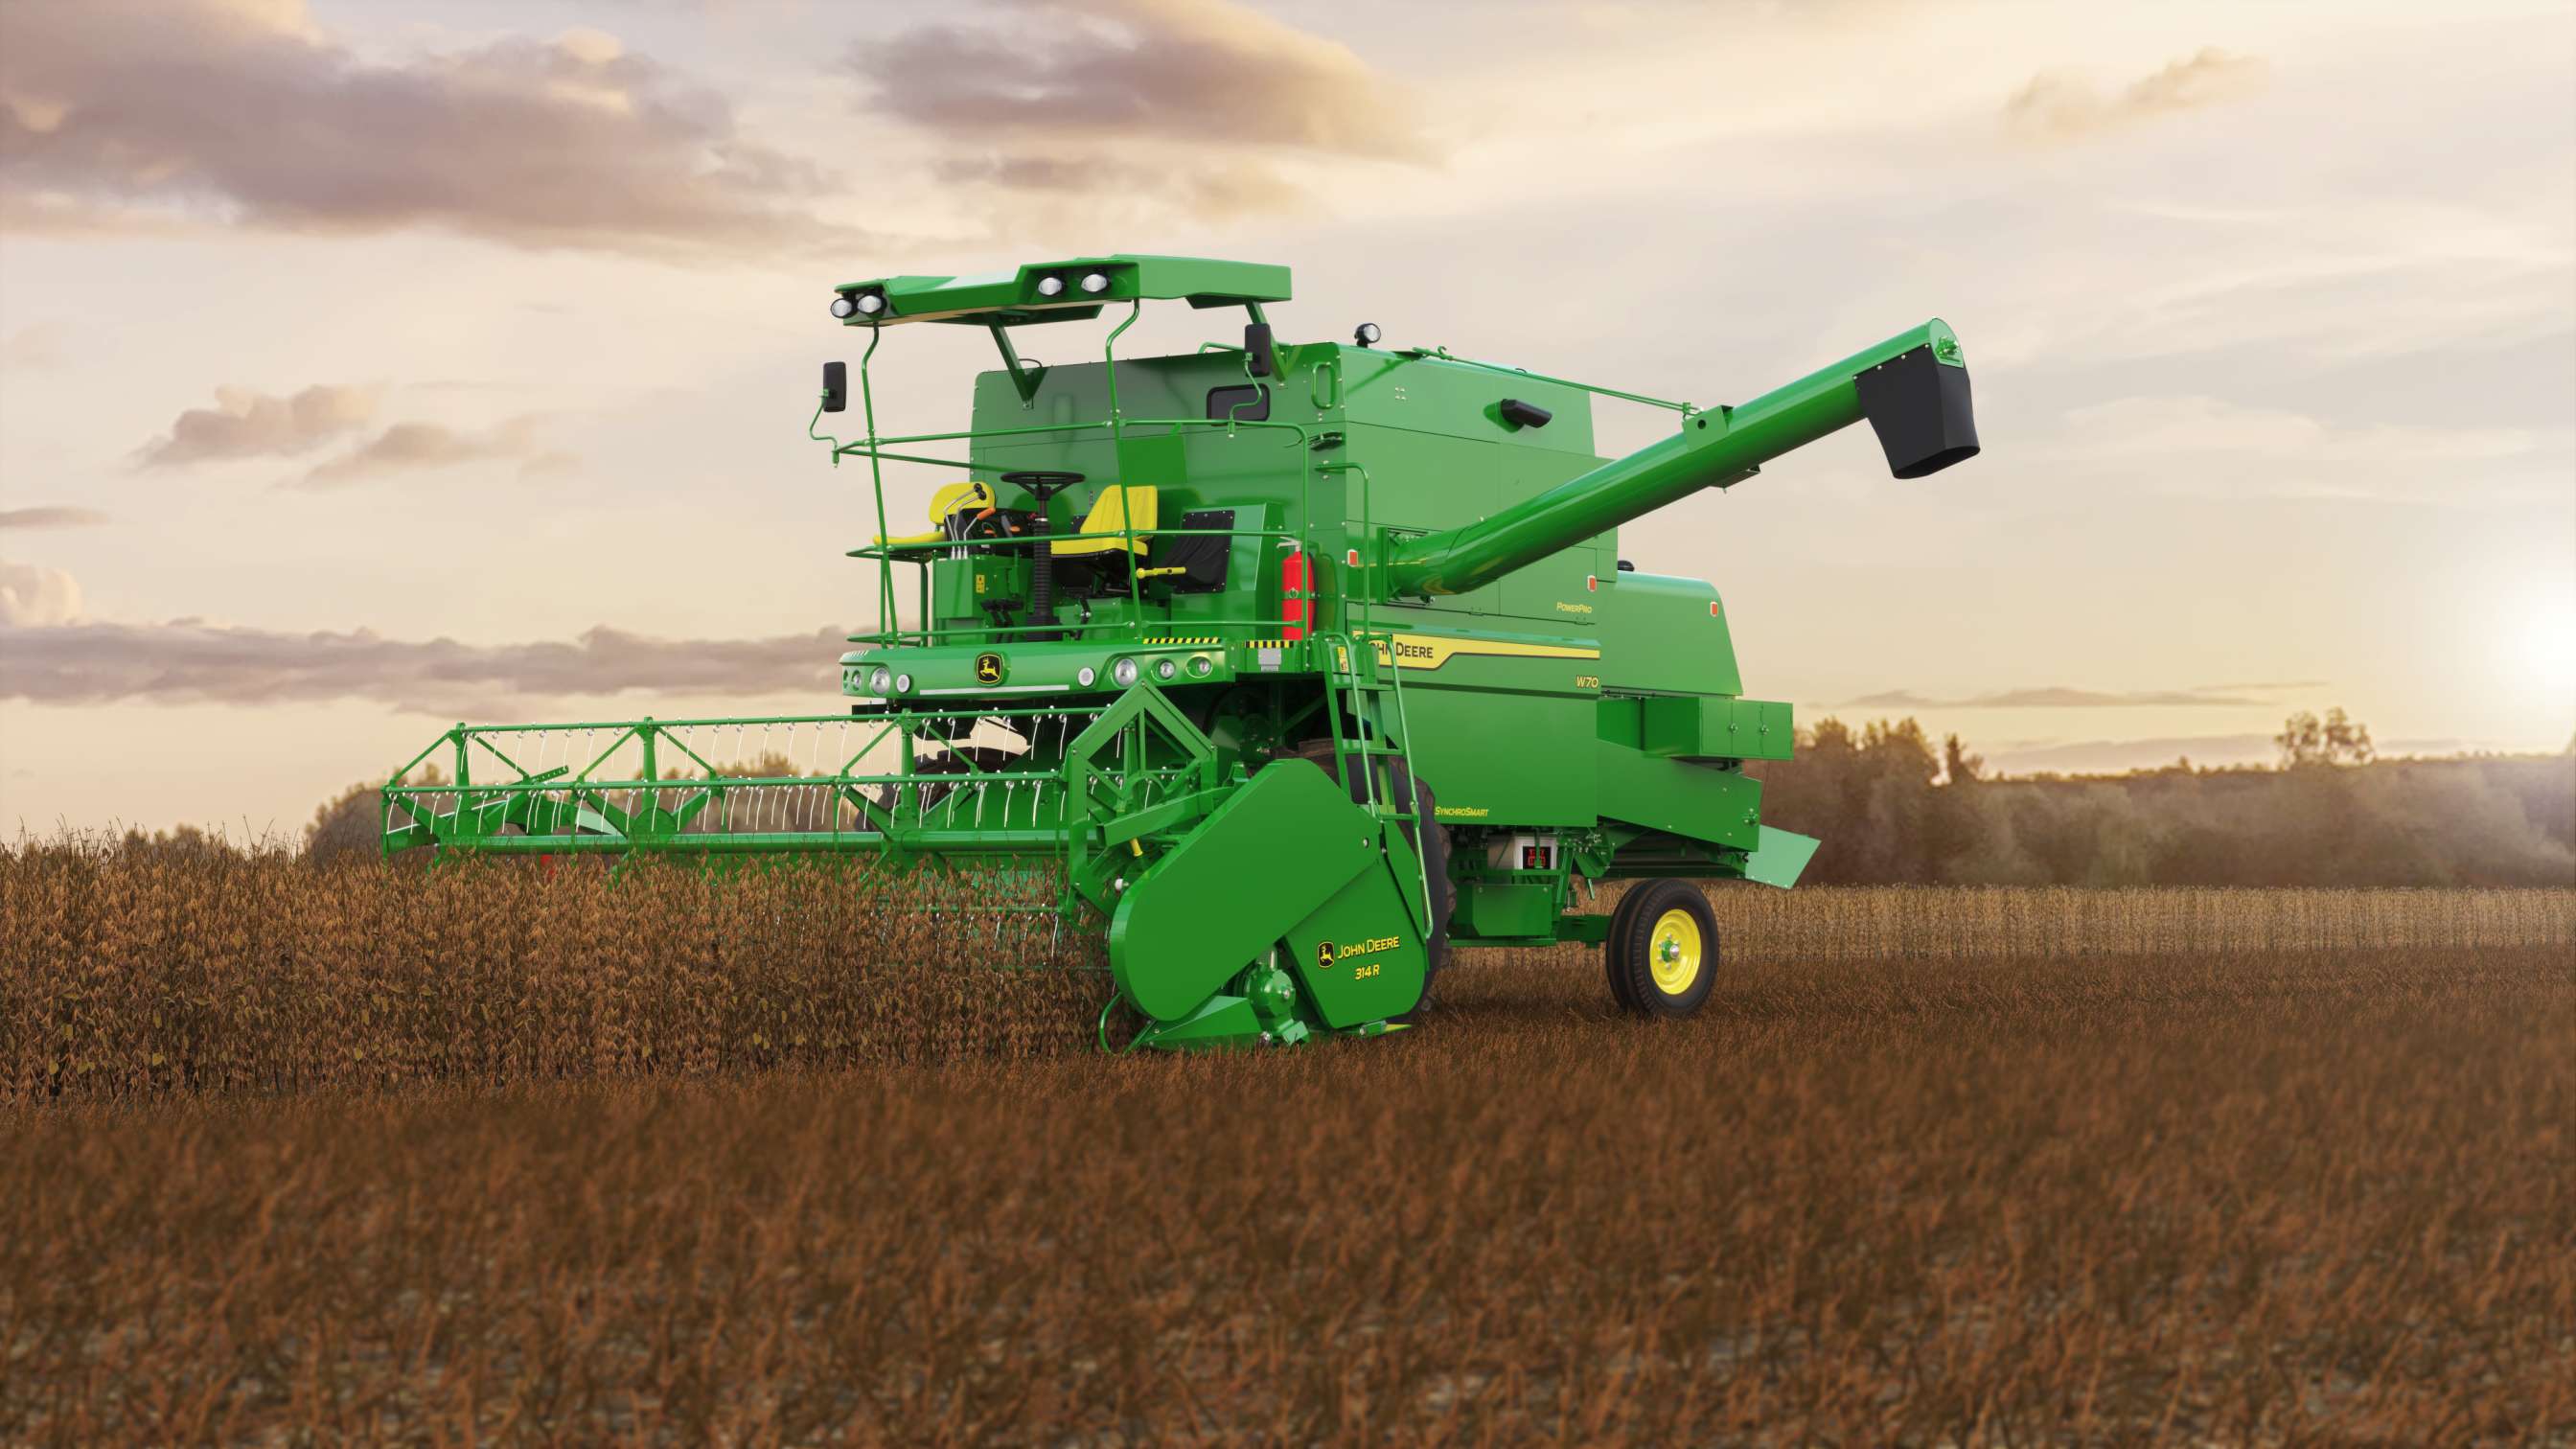 John Deere grain harvesting machine